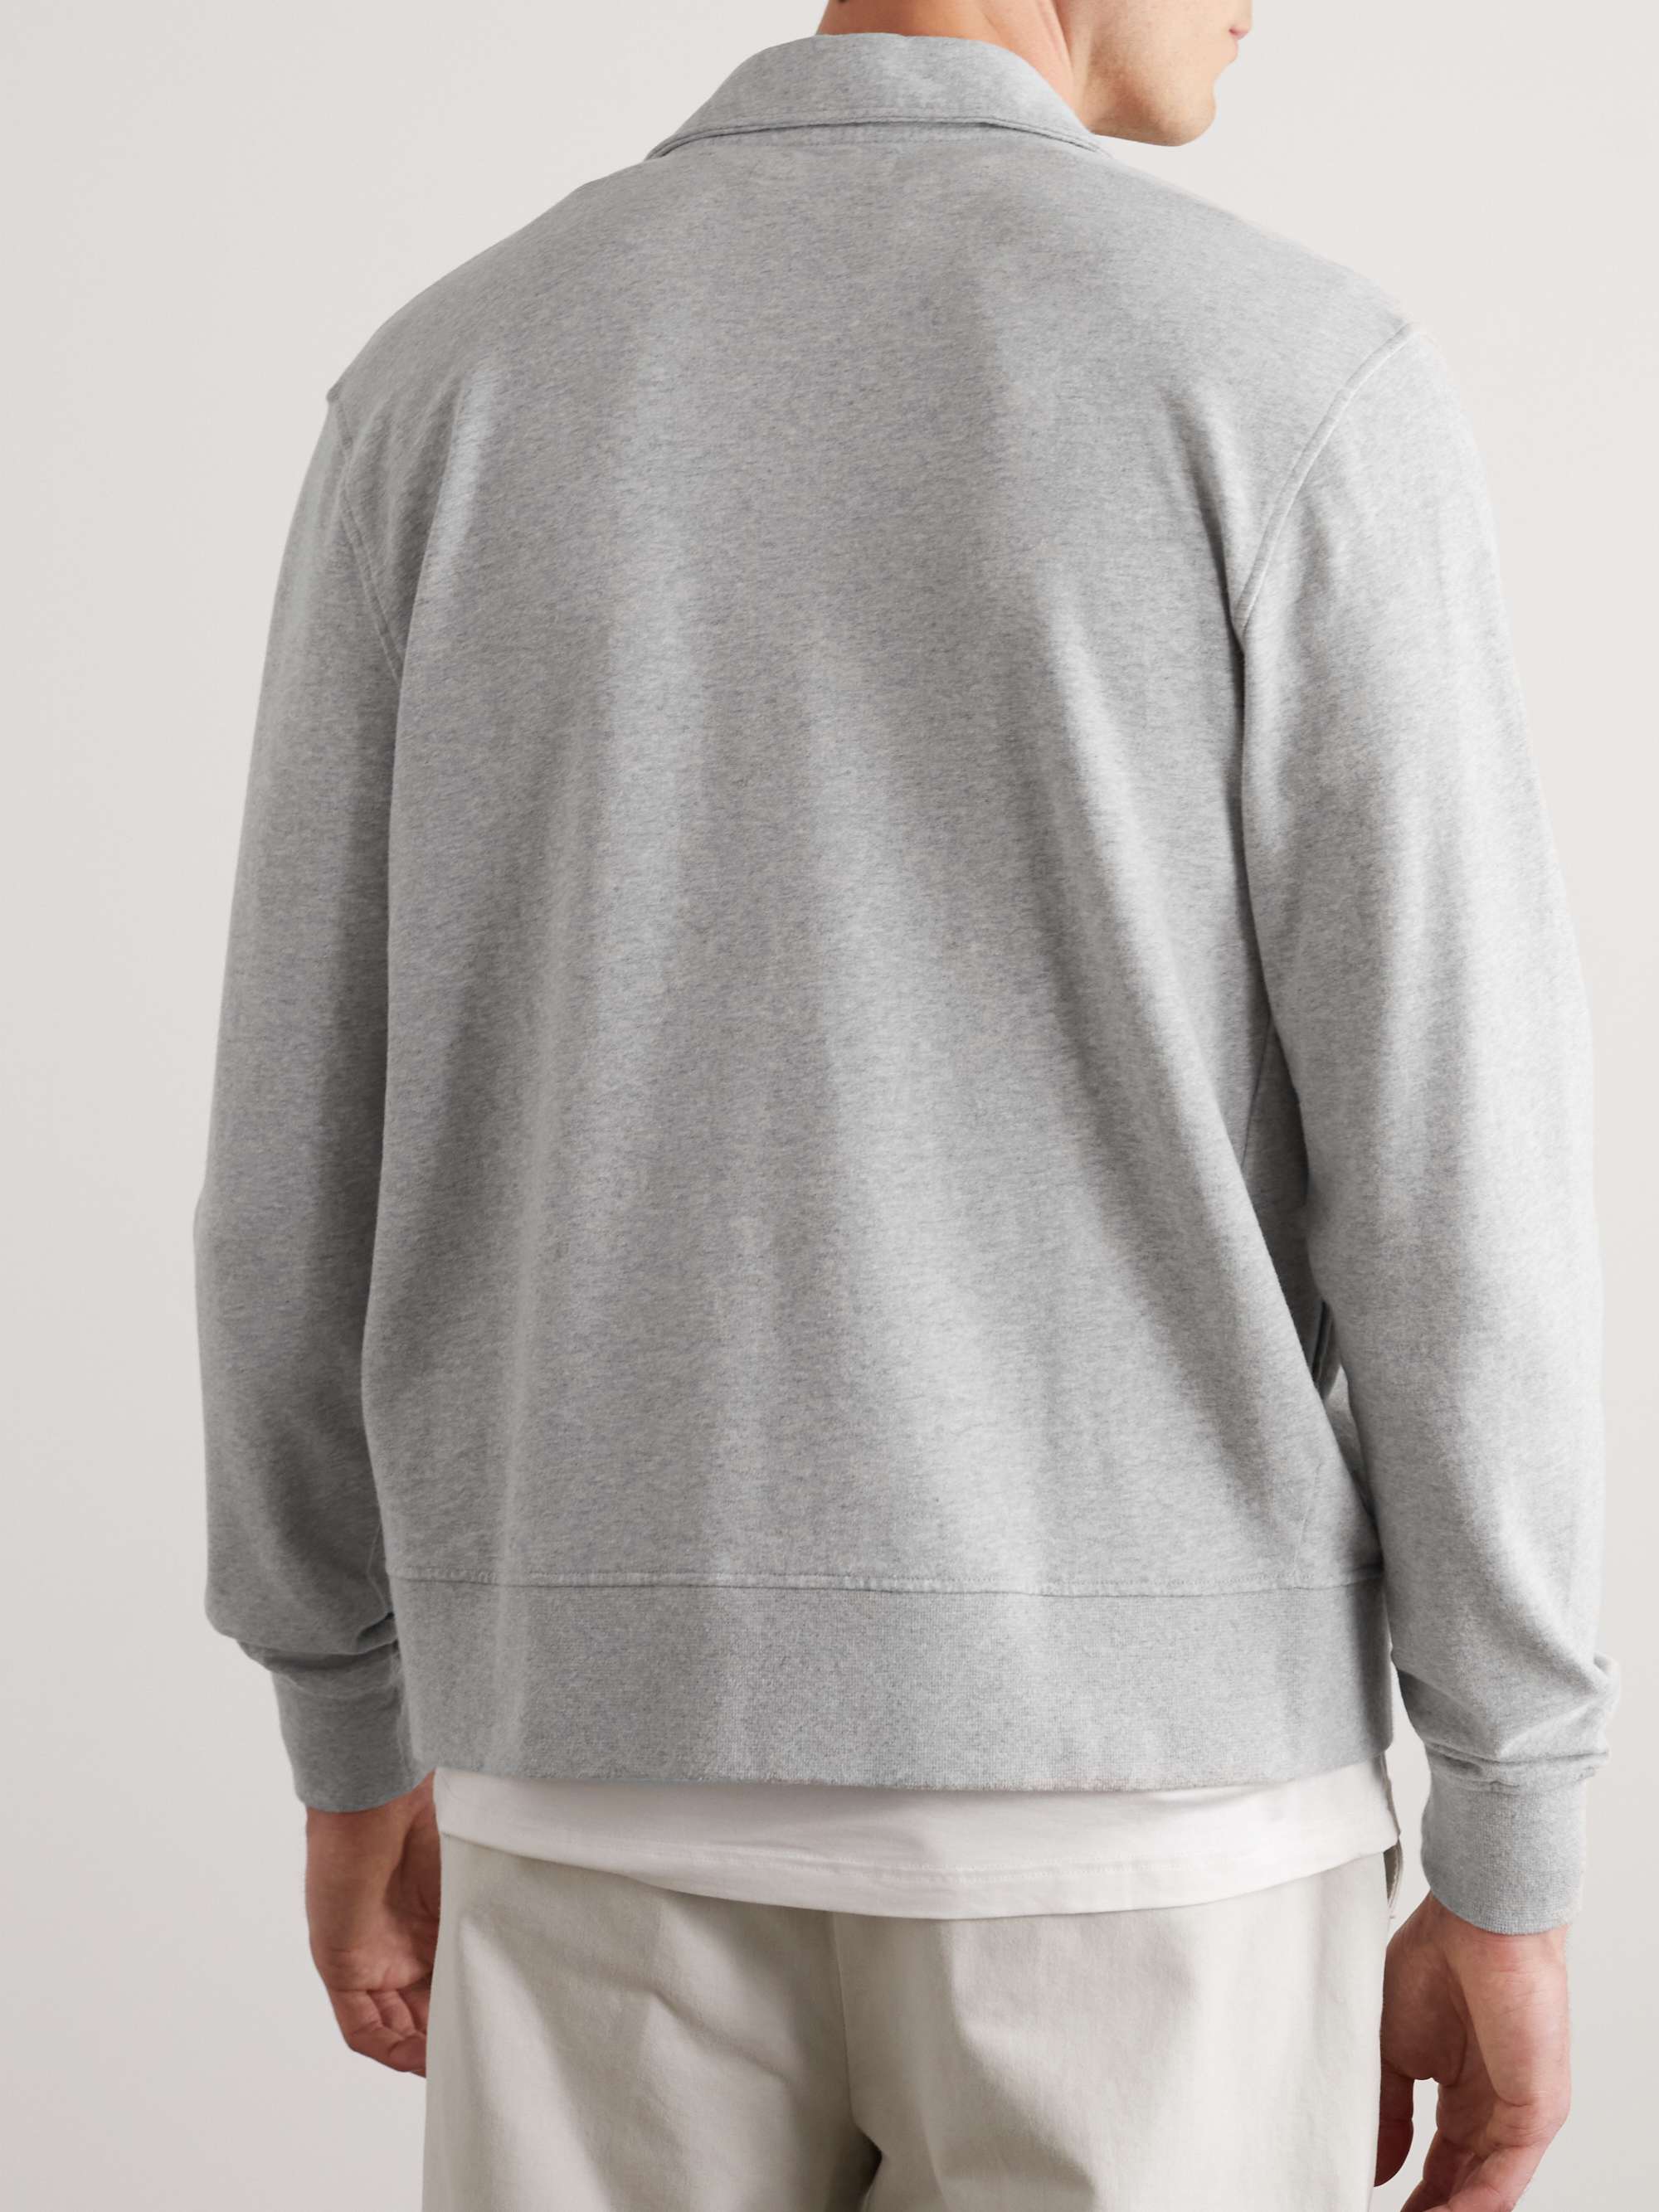 OFFICINE GÉNÉRALE Esborn Cotton-Jersey Zip-Up Sweatshirt for Men | MR ...